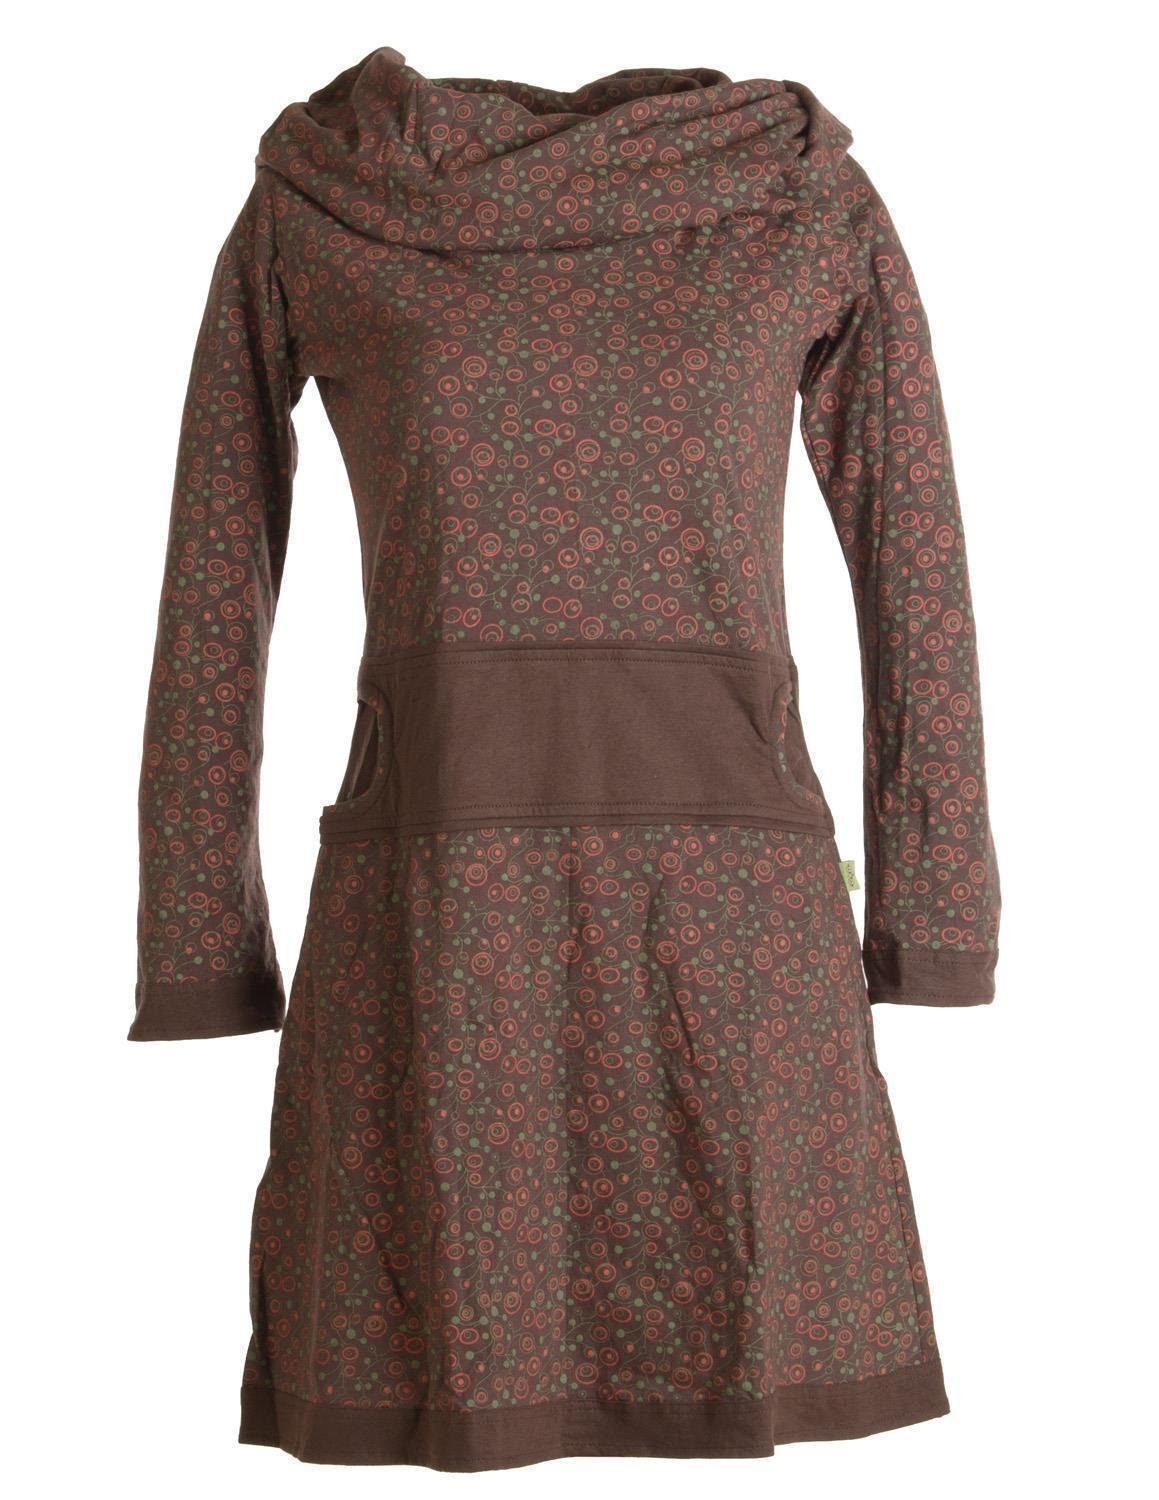 Vishes Jerseykleid Bedrucktes Kleid Hippie Style Goa, Boho, Schalkragen aus Baumwolle Ethno, mit dunkelbraun